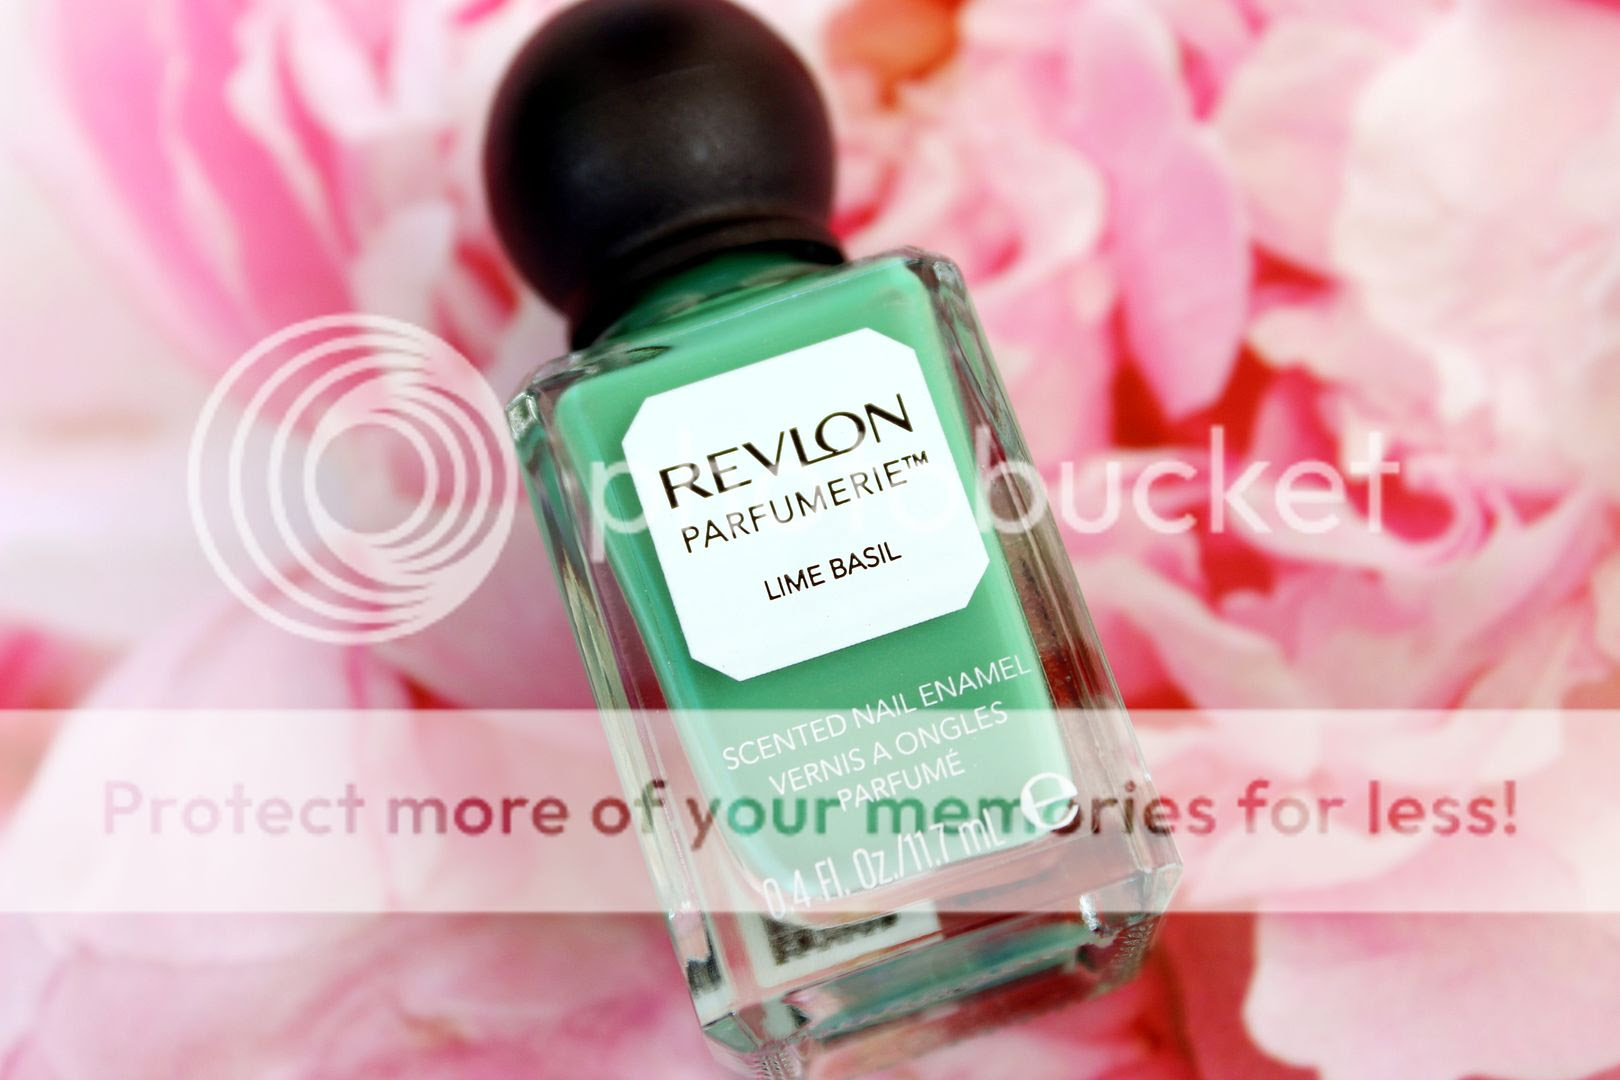 Revlon Parfumerie in Lime Basil